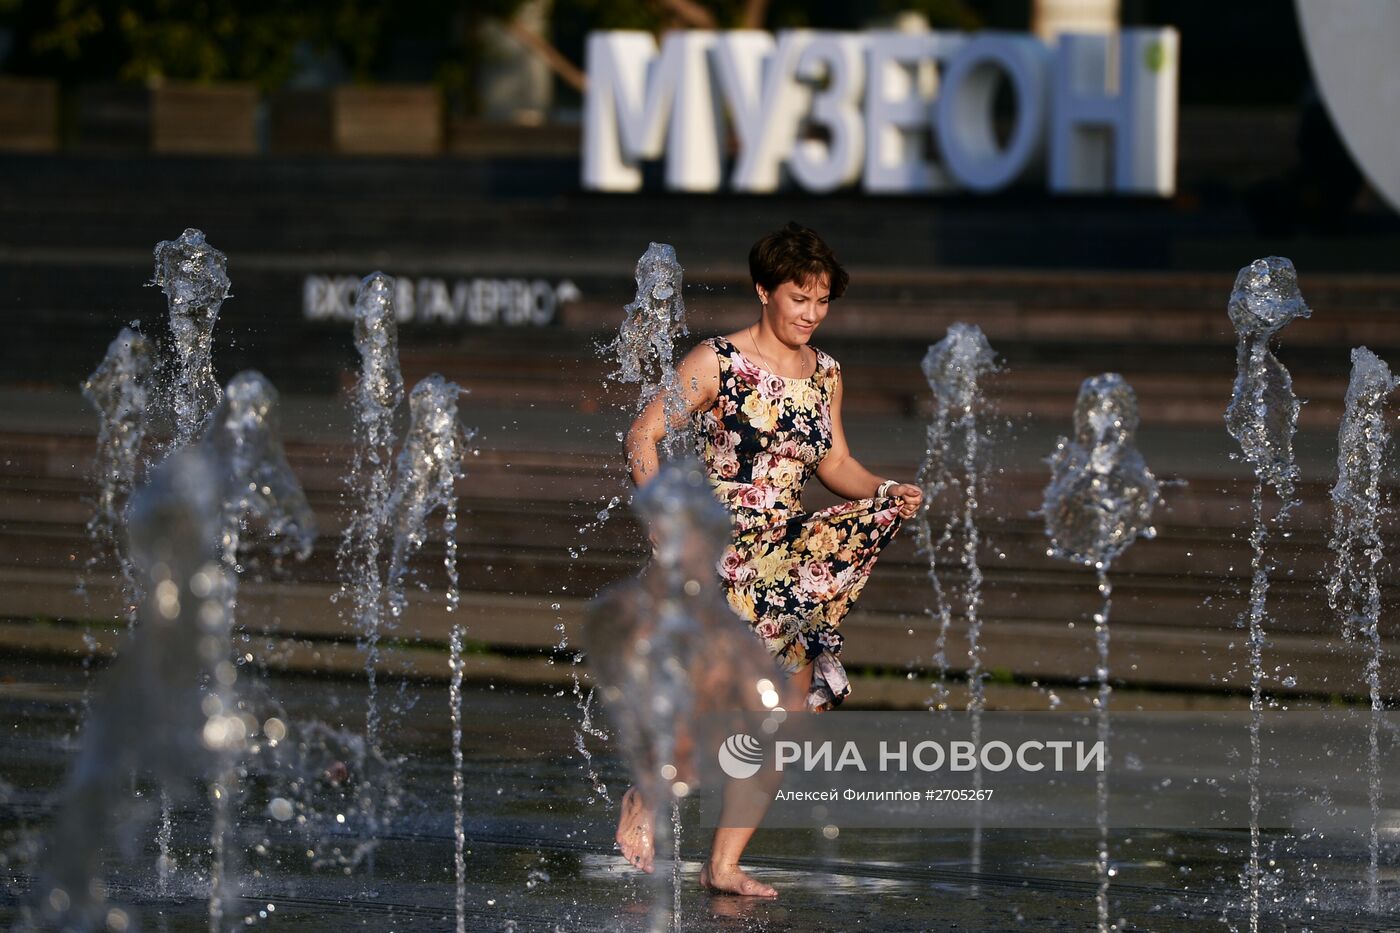 Теплая погода в Москве Теплая погода в Москве